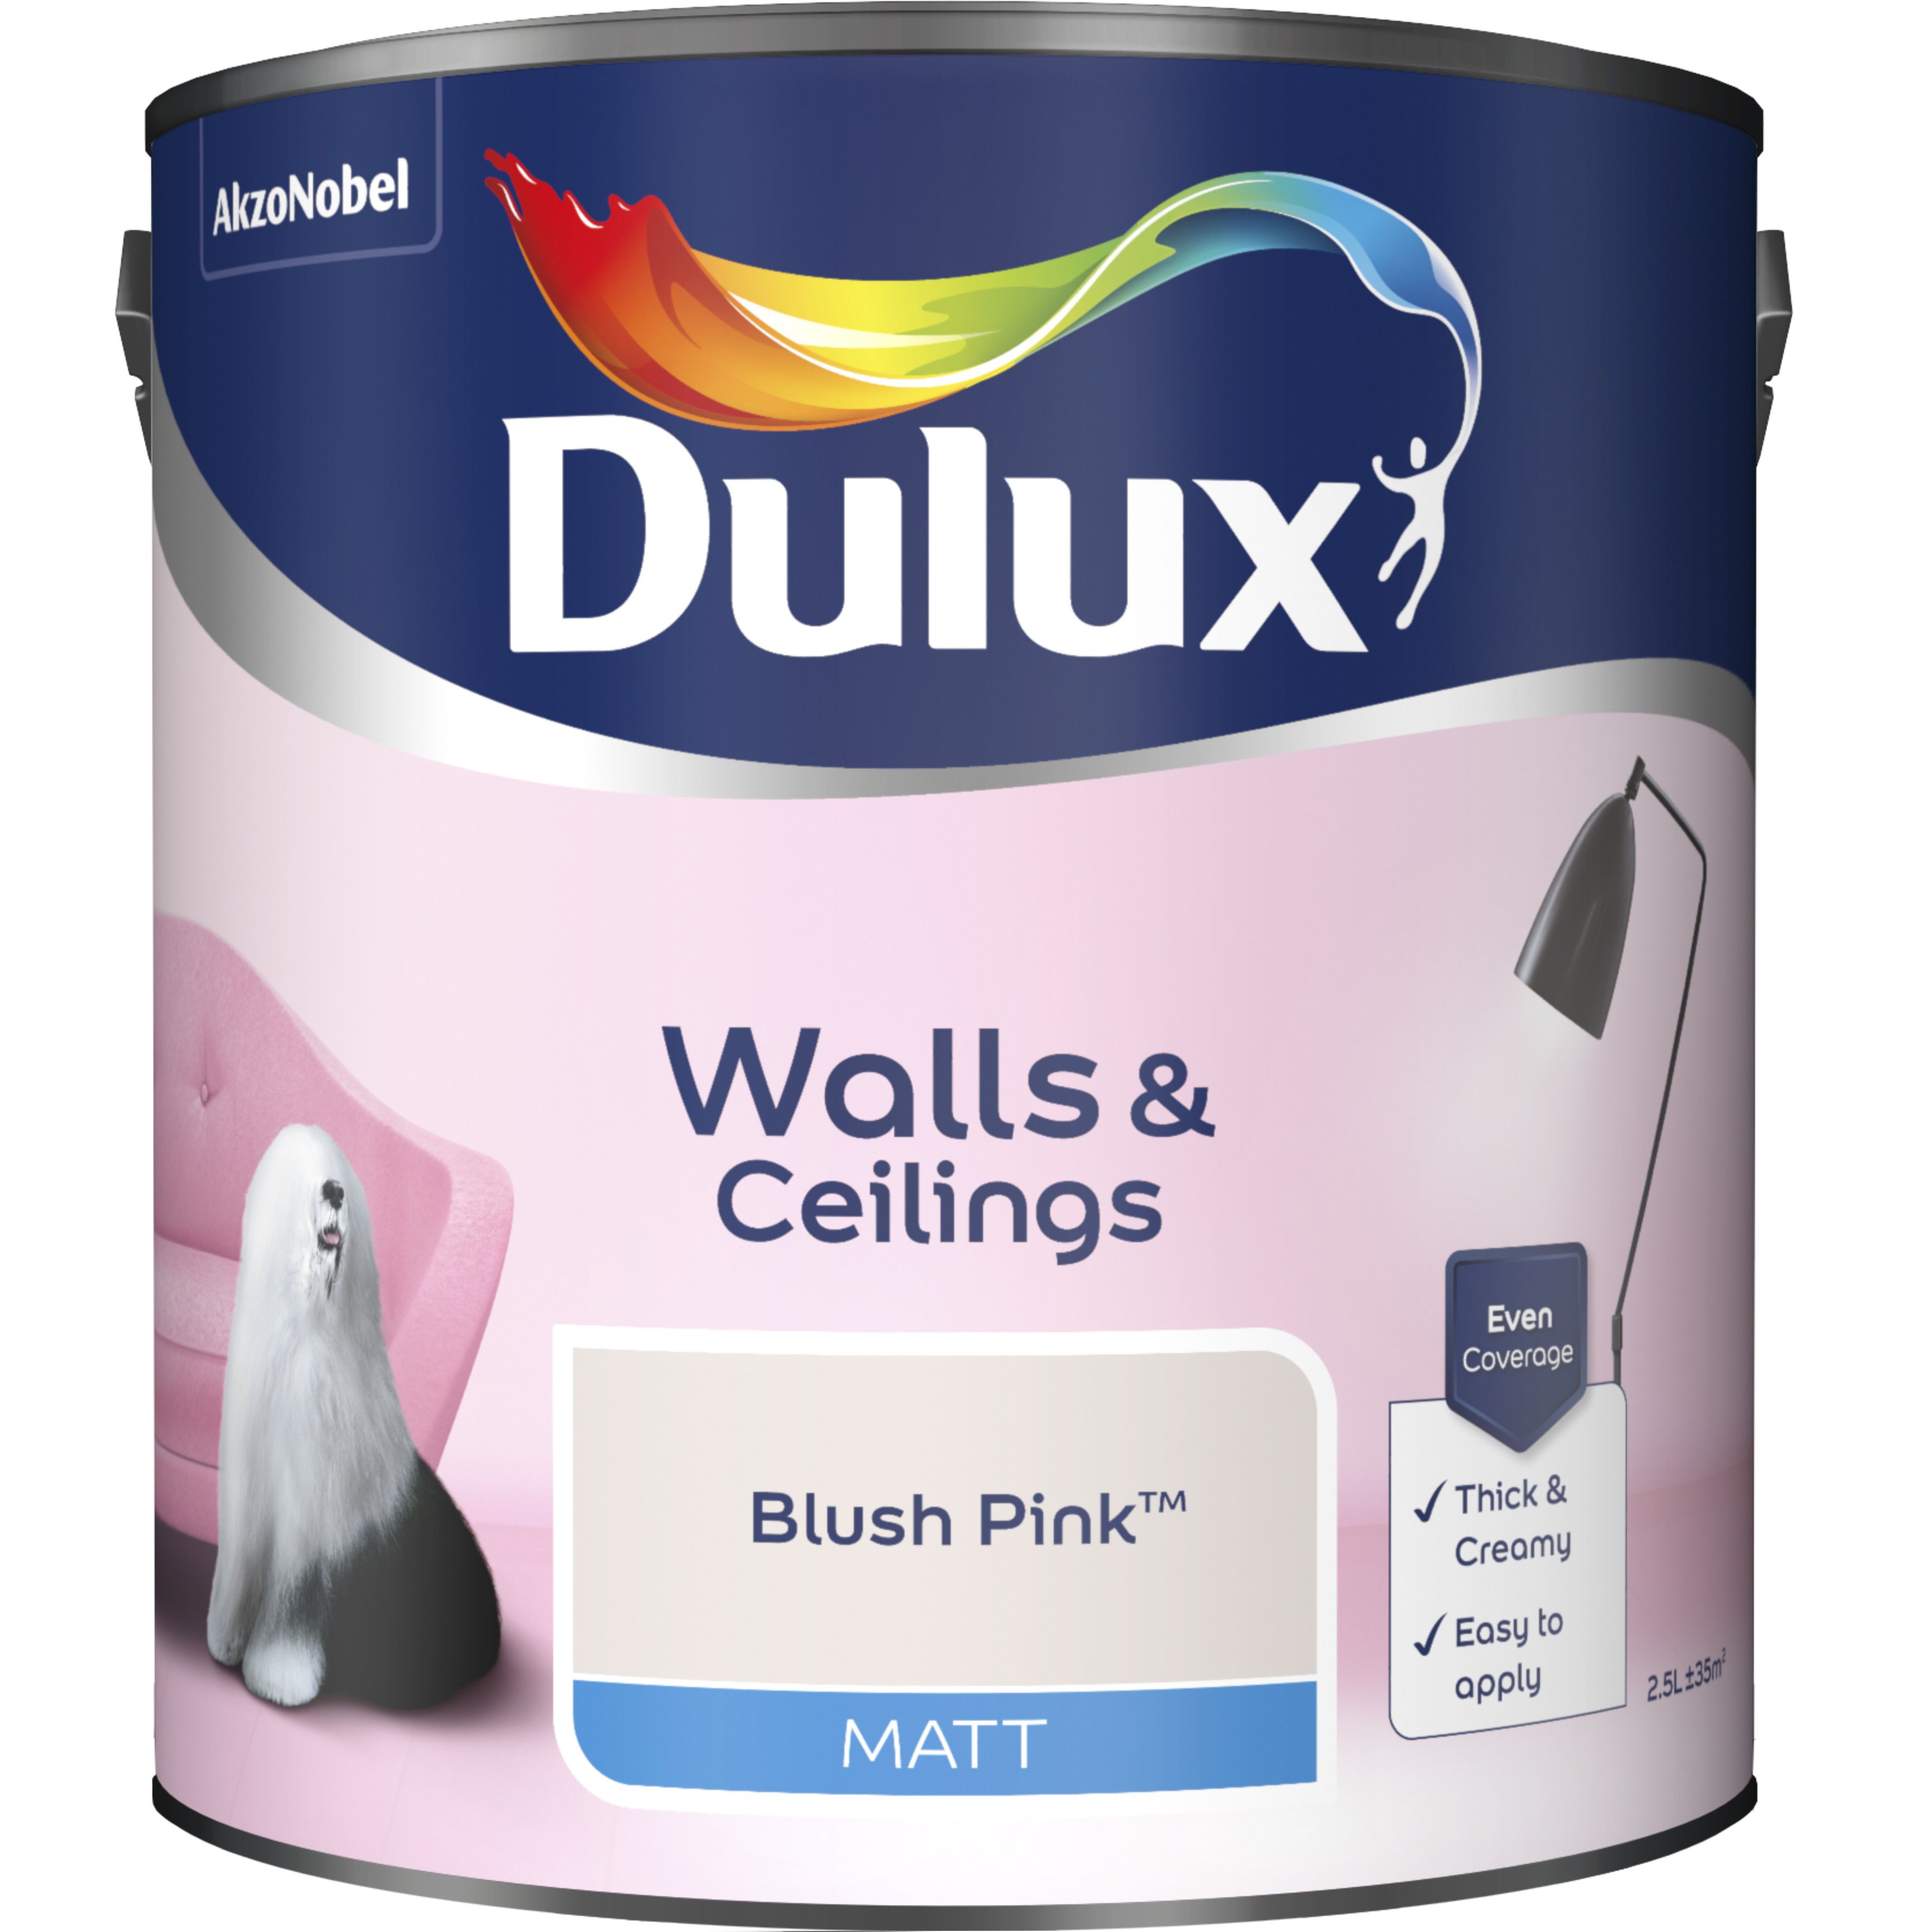 Dulux Walls & ceilings Blush pink Matt Emulsion paint, 2.5L